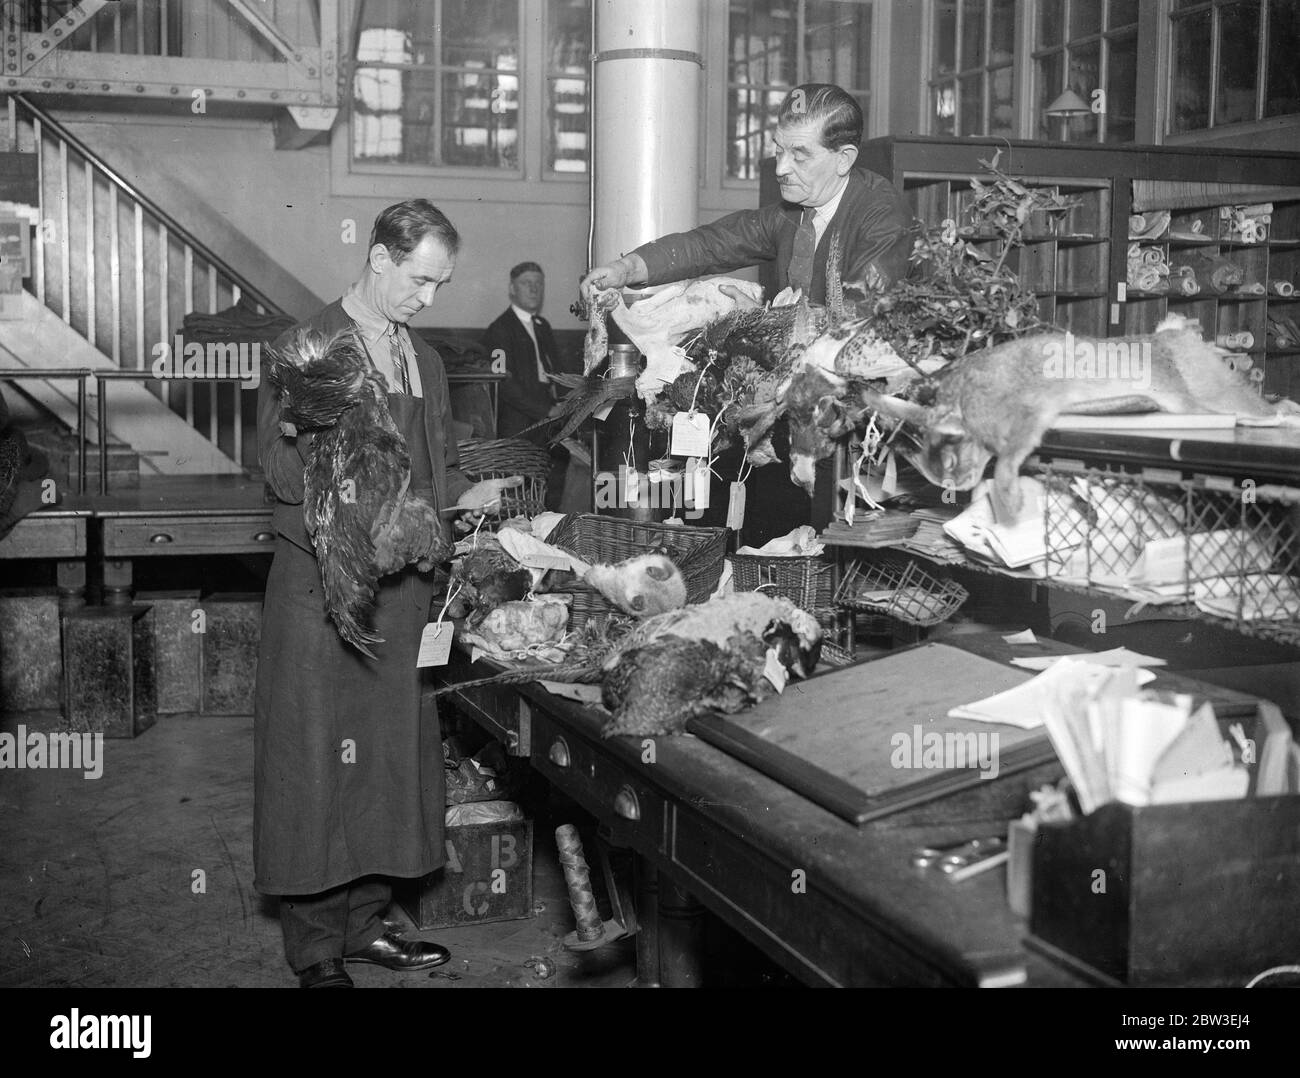 Postbehörden in Londons größtem Sortierbüro, Mount Pleasant, Umgang mit Hunderten von Weihnachtspaketen, die in die Irre gingen. 27 Dezember 1934 Stockfoto